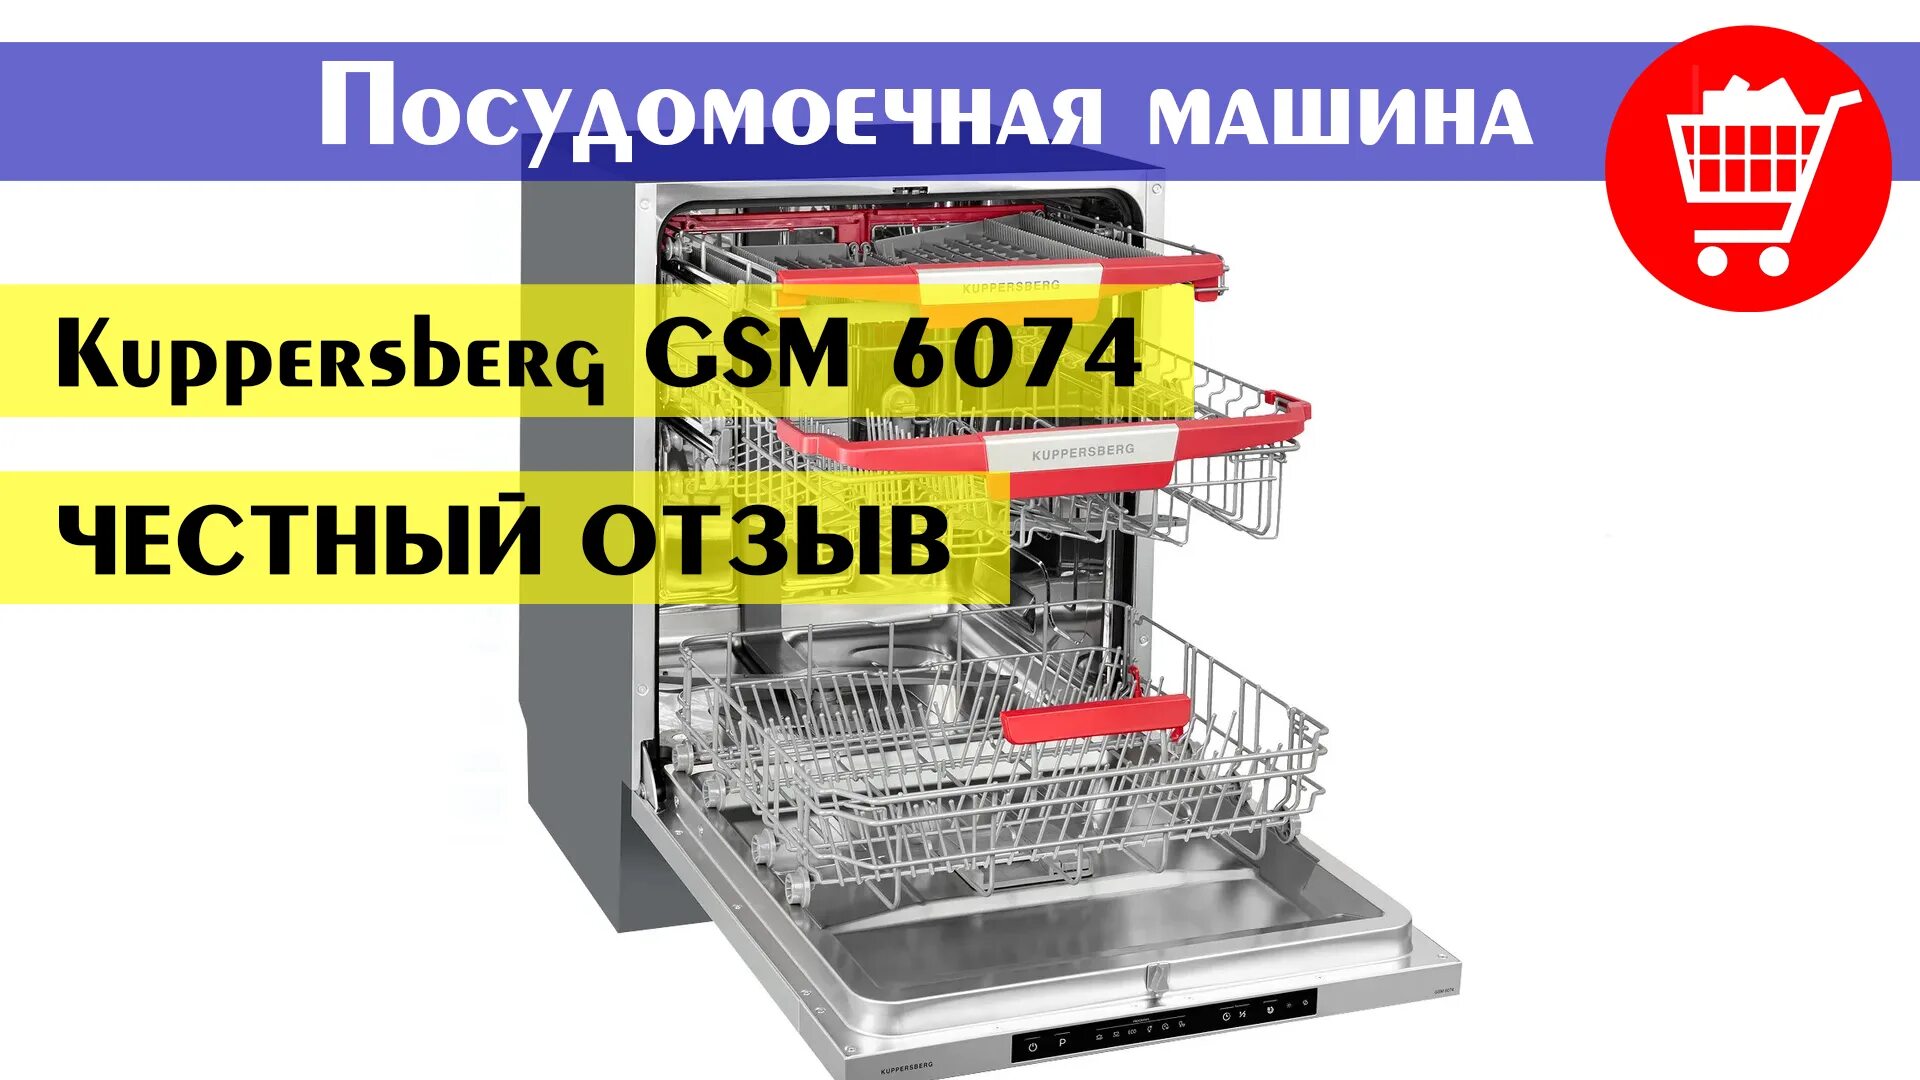 Посудомоечная машина gsm 6074. Посудомоечная машина Kuppersberg GSM 6074. Посудомоечная машина встраиваемая Kuppersberg GSM 4574. Встраиваемая посудомоечная машина 60 см Kuppersberg GSM 6074. Kuppersberg GS 6074.